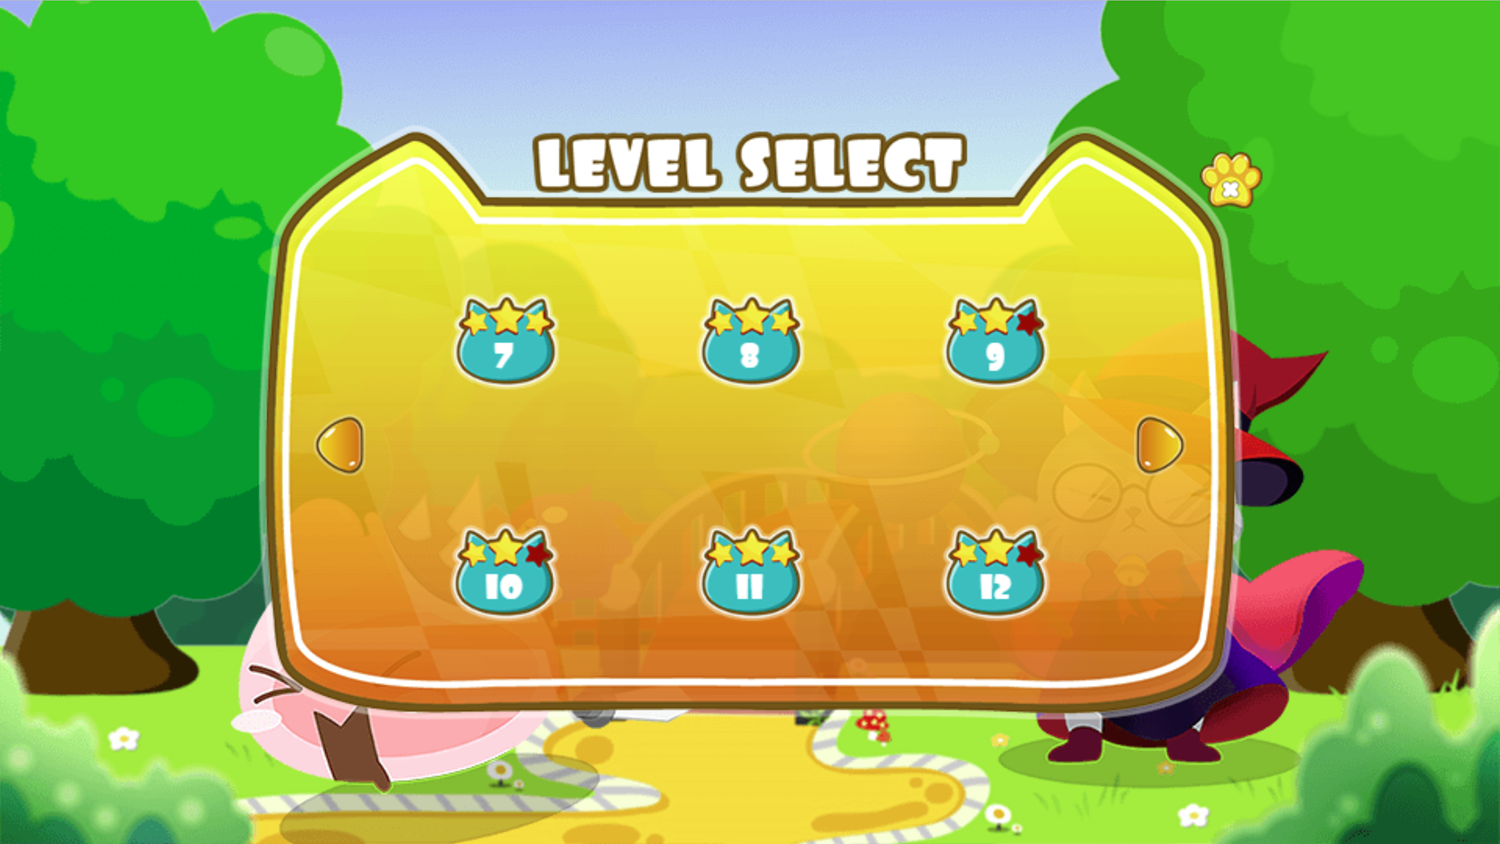 Cat Wizard Defense Game Water Level Select Screen Screenshot.